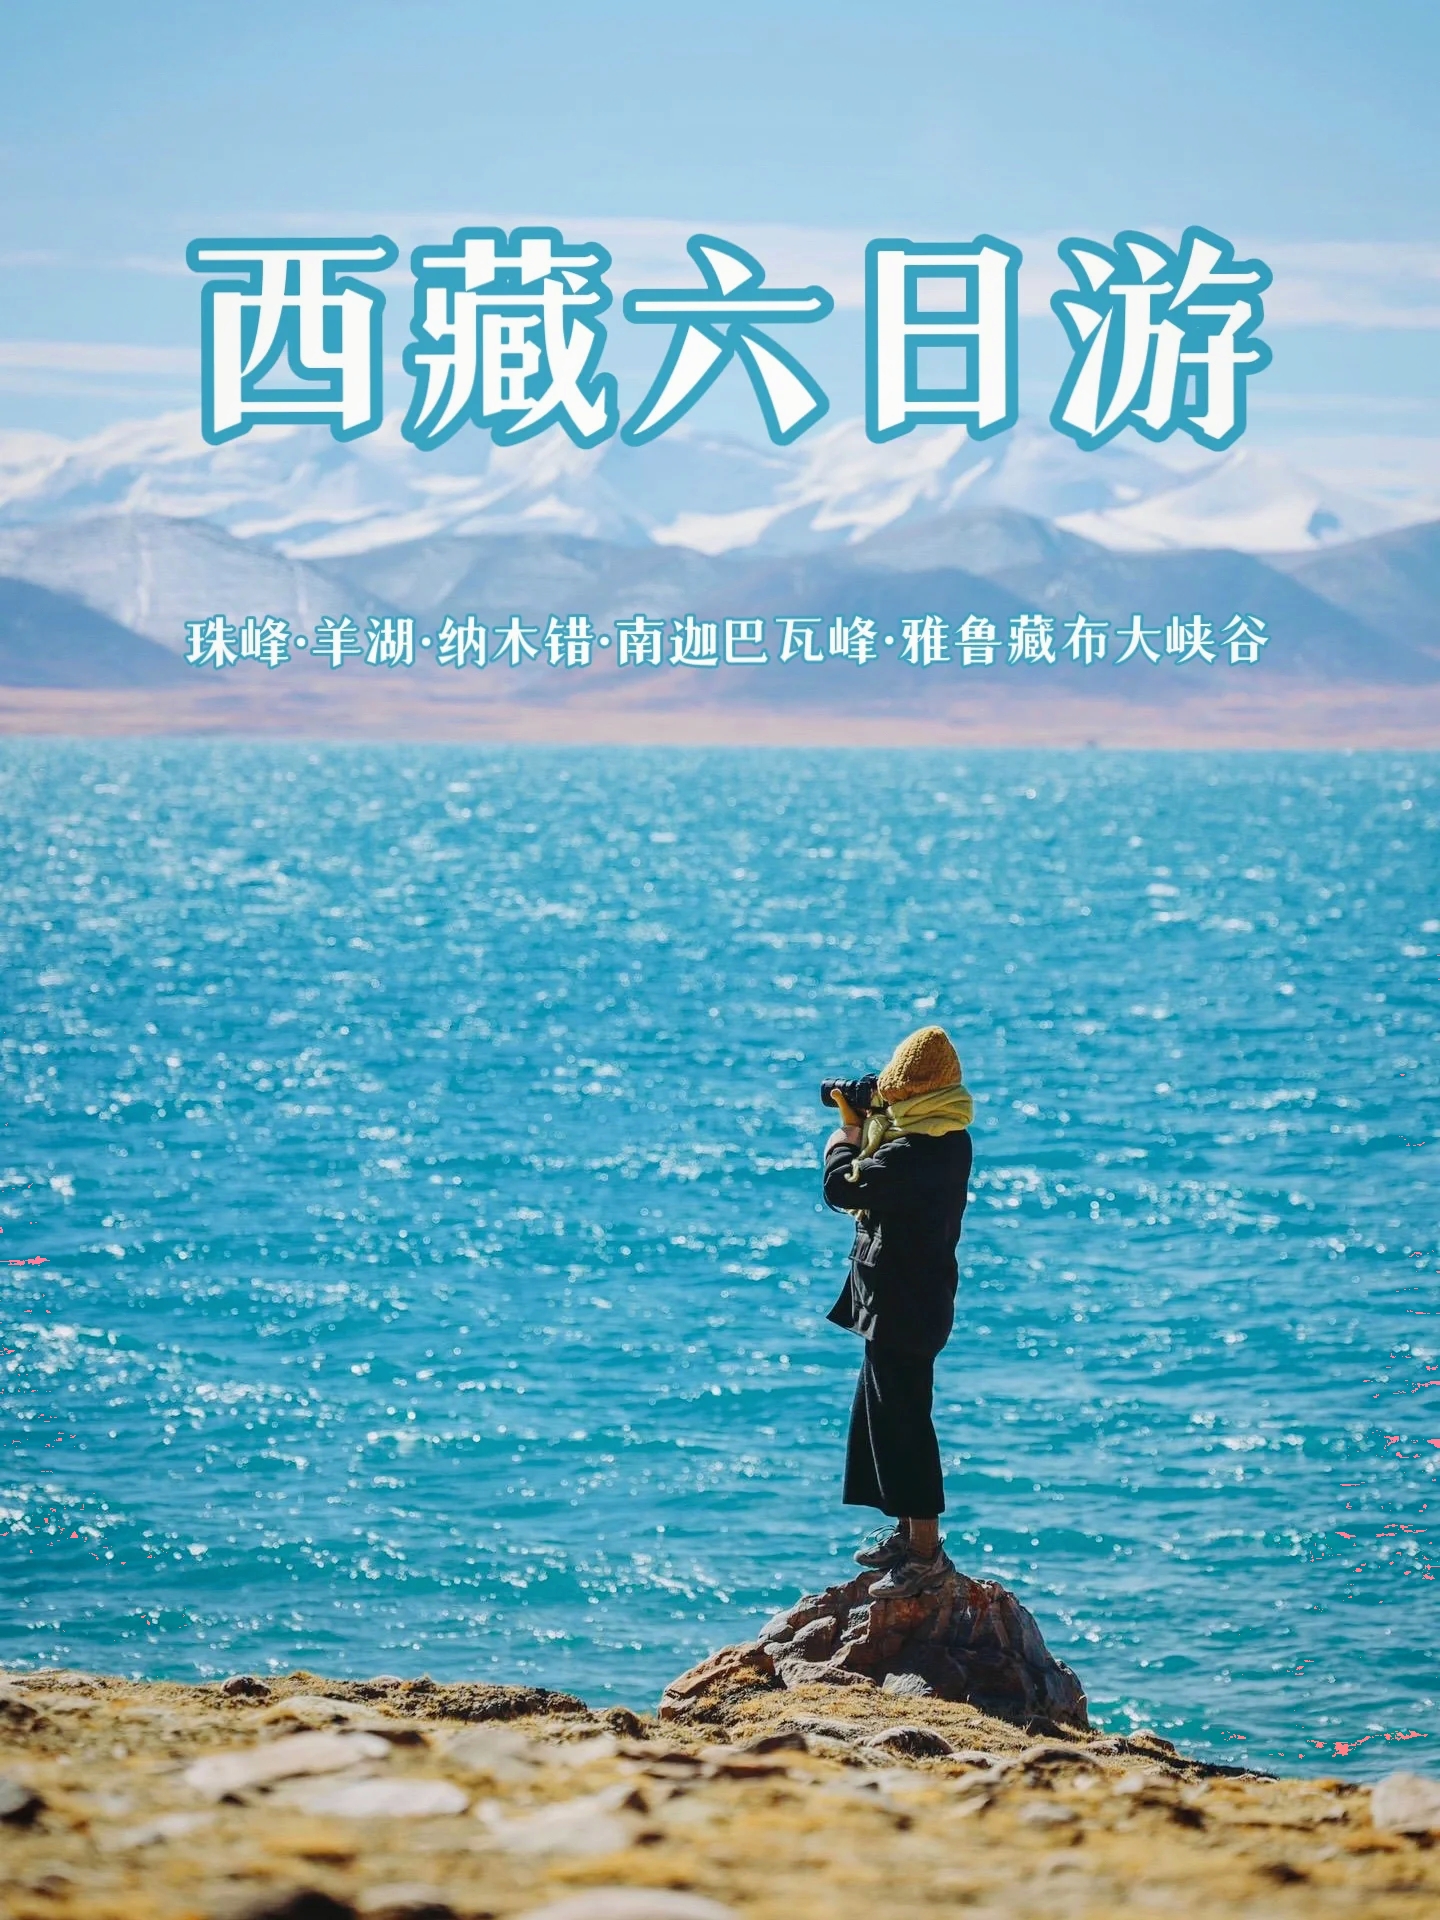 西藏最经典路线  珠峰林芝6日游才2k+